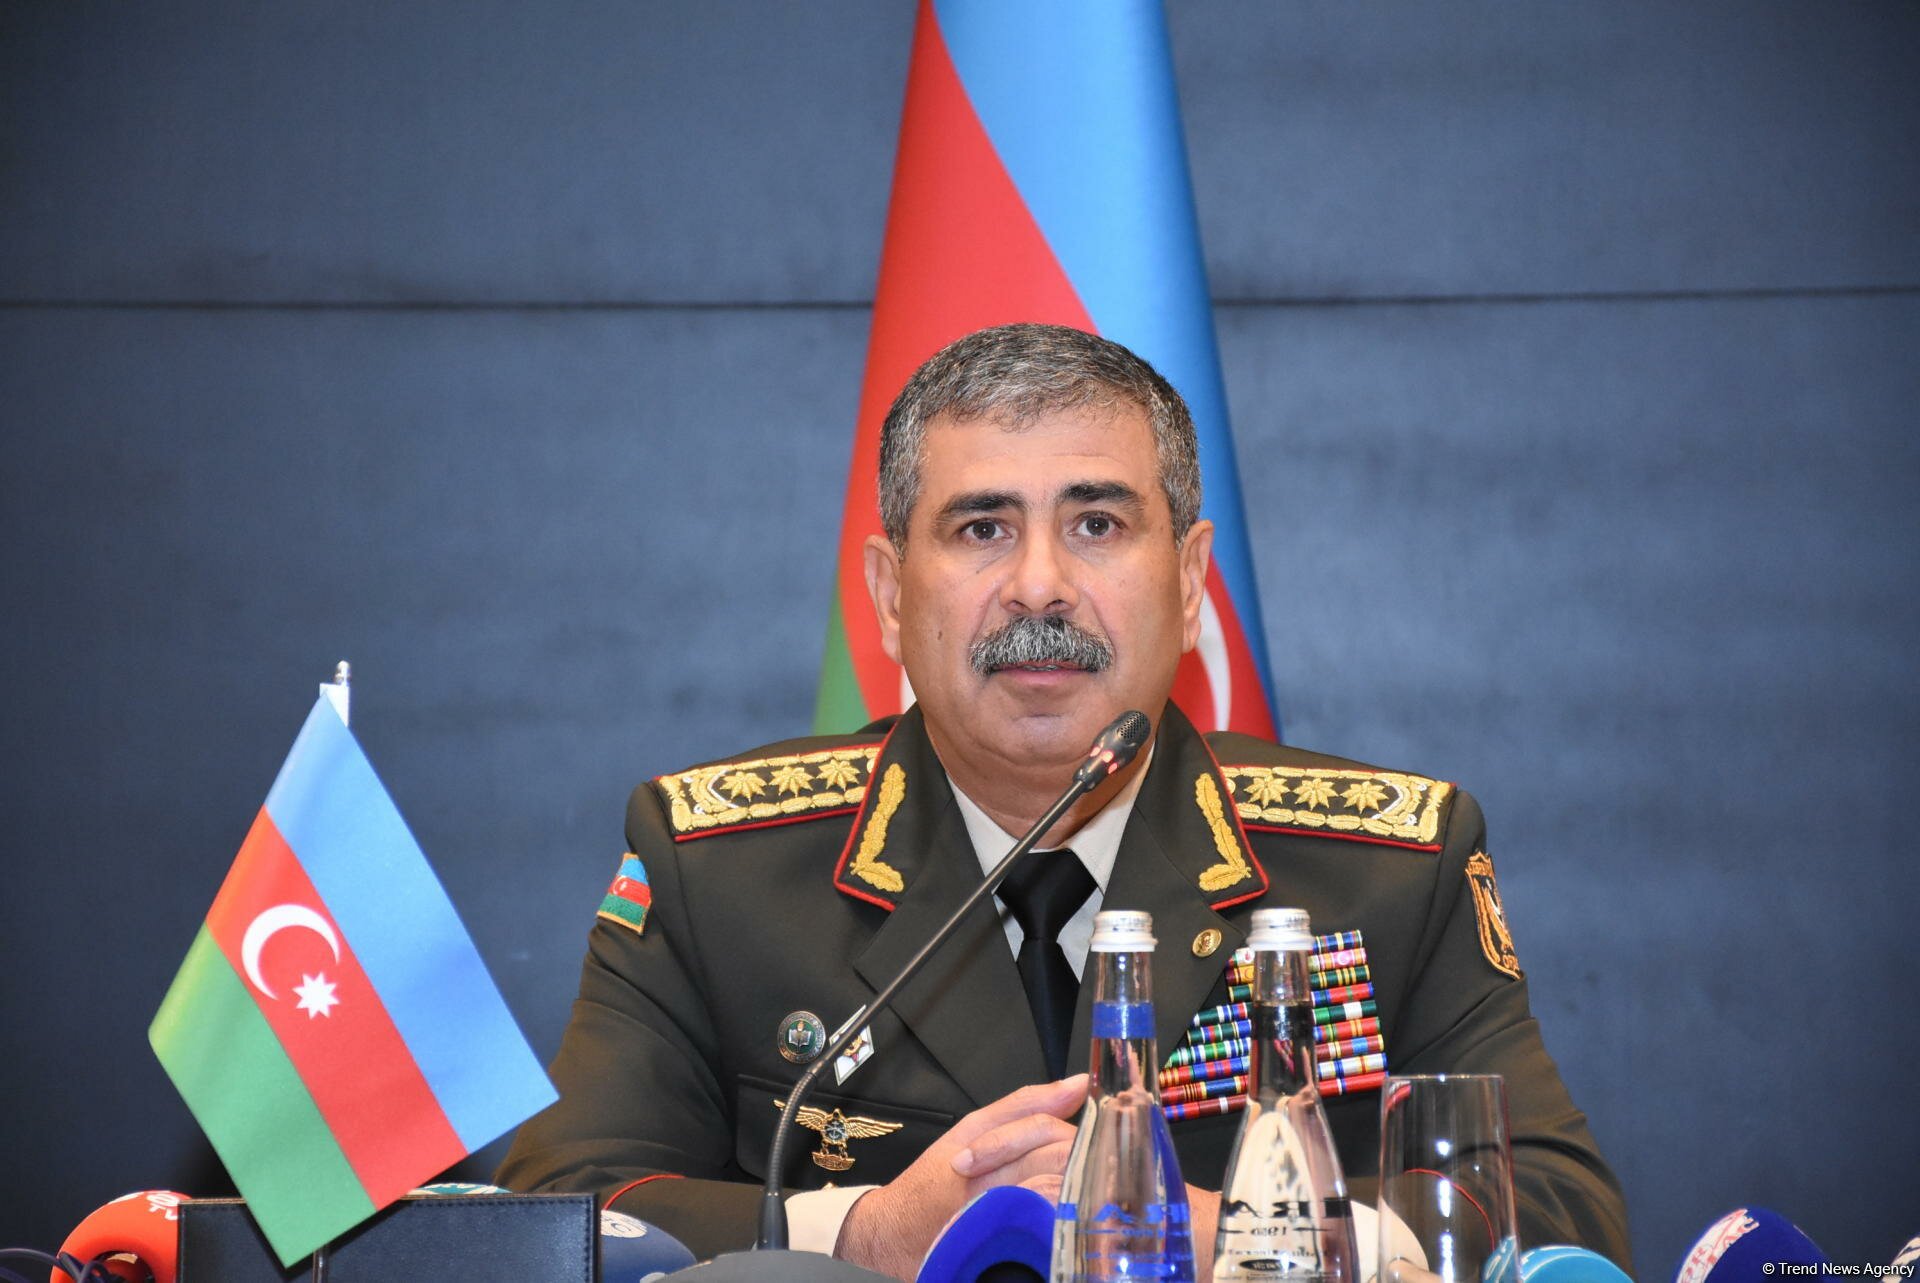 ​СМИ: Турция вмешалась в дела Азербайджана, отстранив министра обороны Гасанова